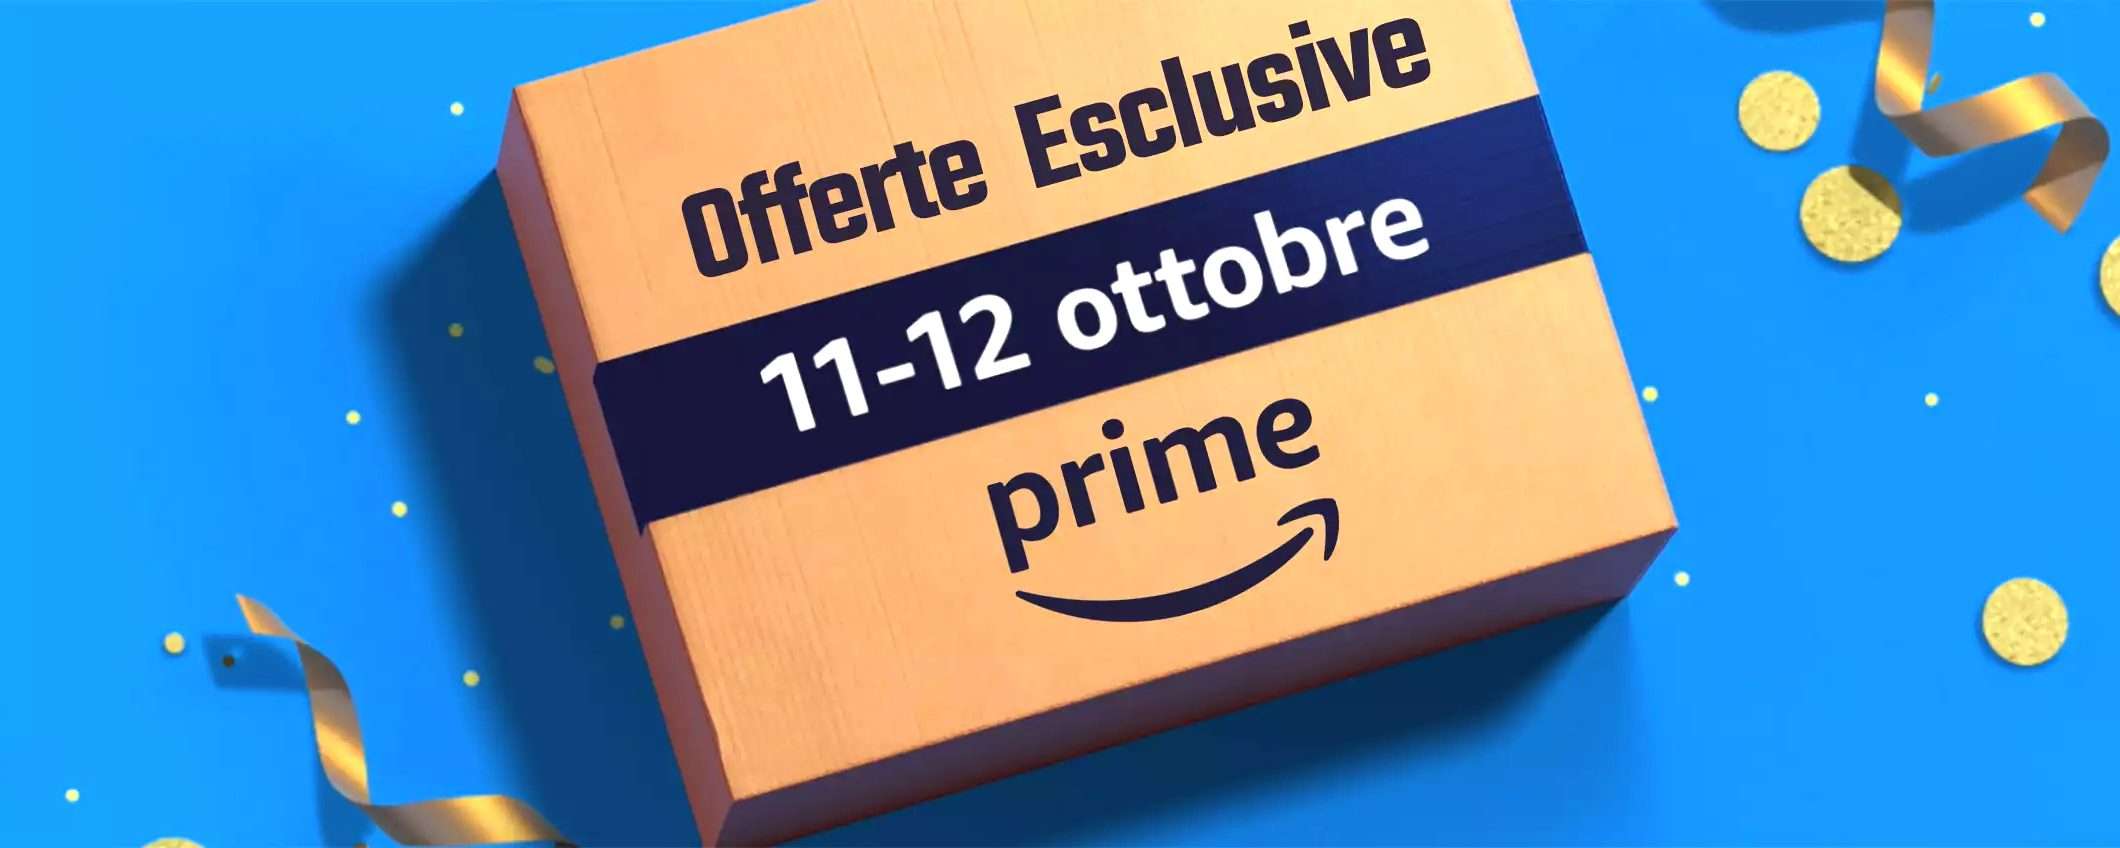 Il nuovo evento di Amazon: Offerte Esclusive Prime